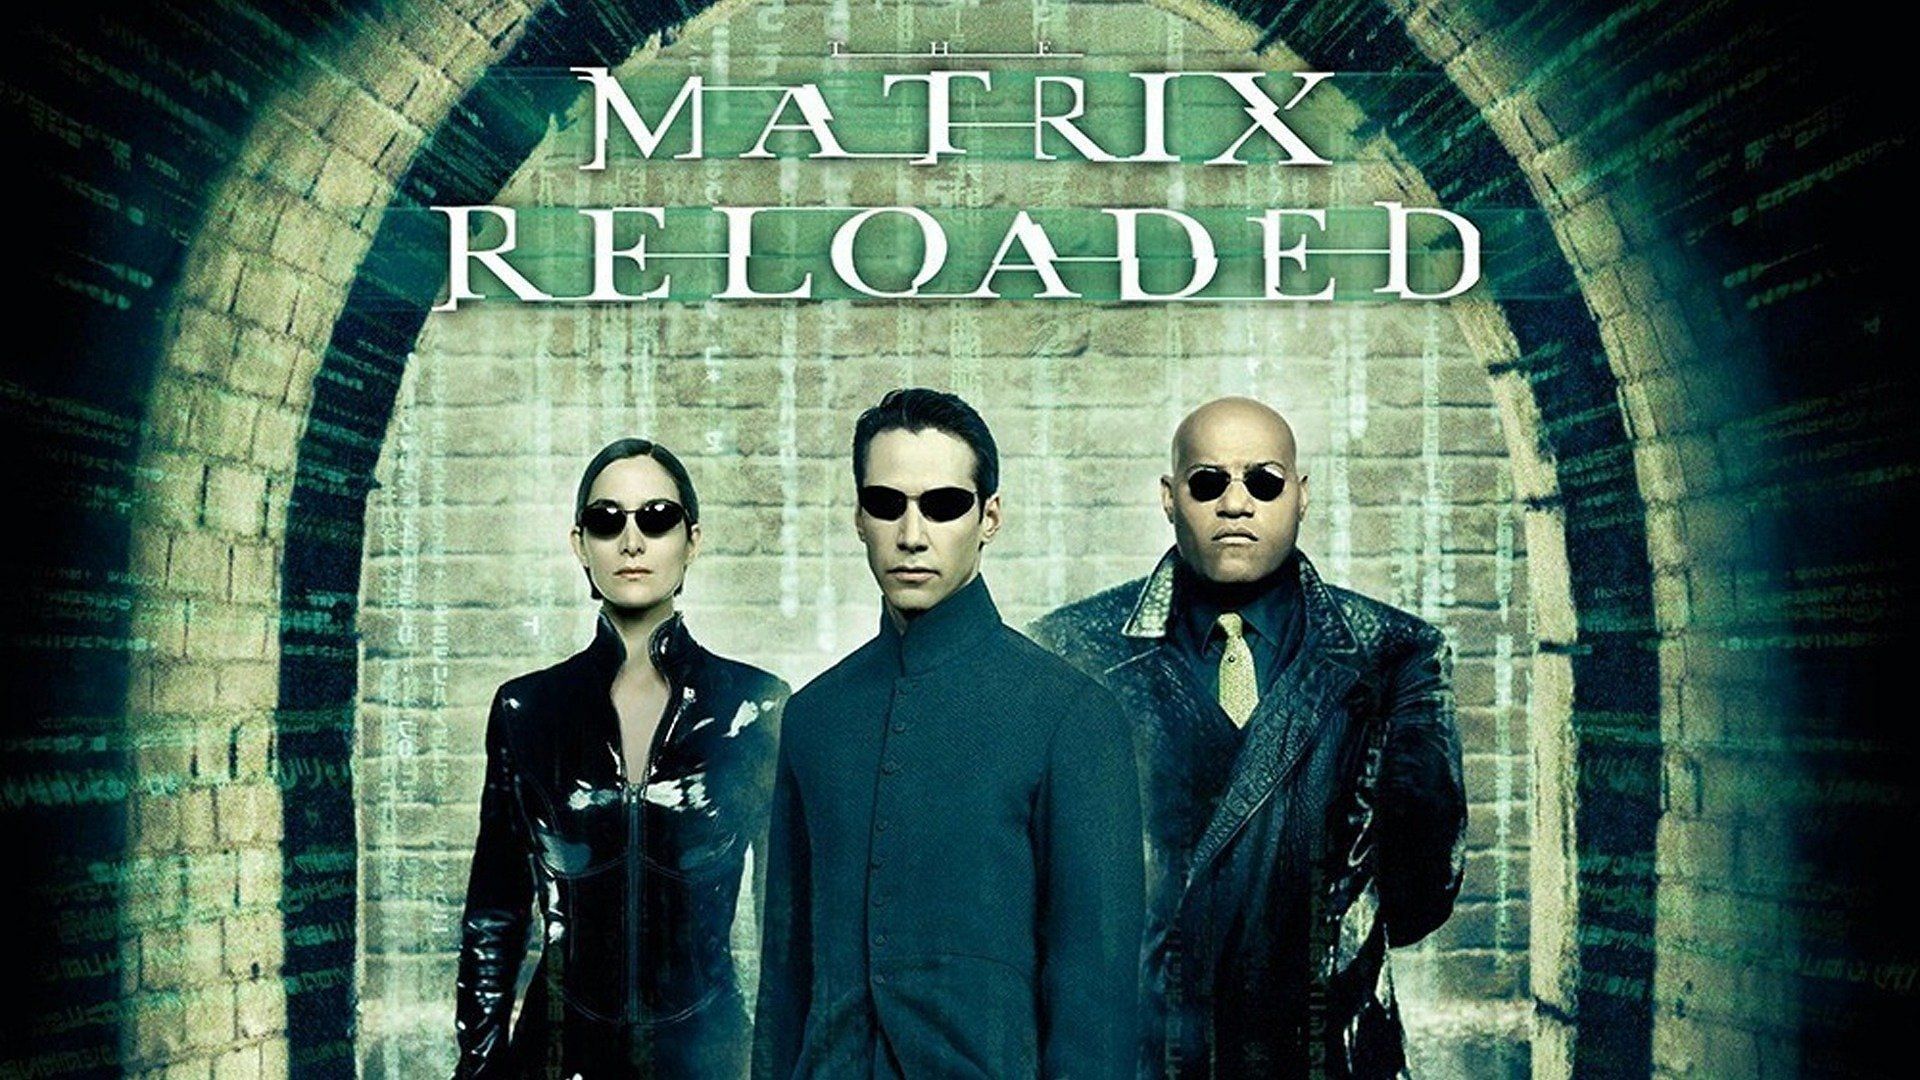 The Matrix Reloaded (Image via Warner Bros. Pictures)